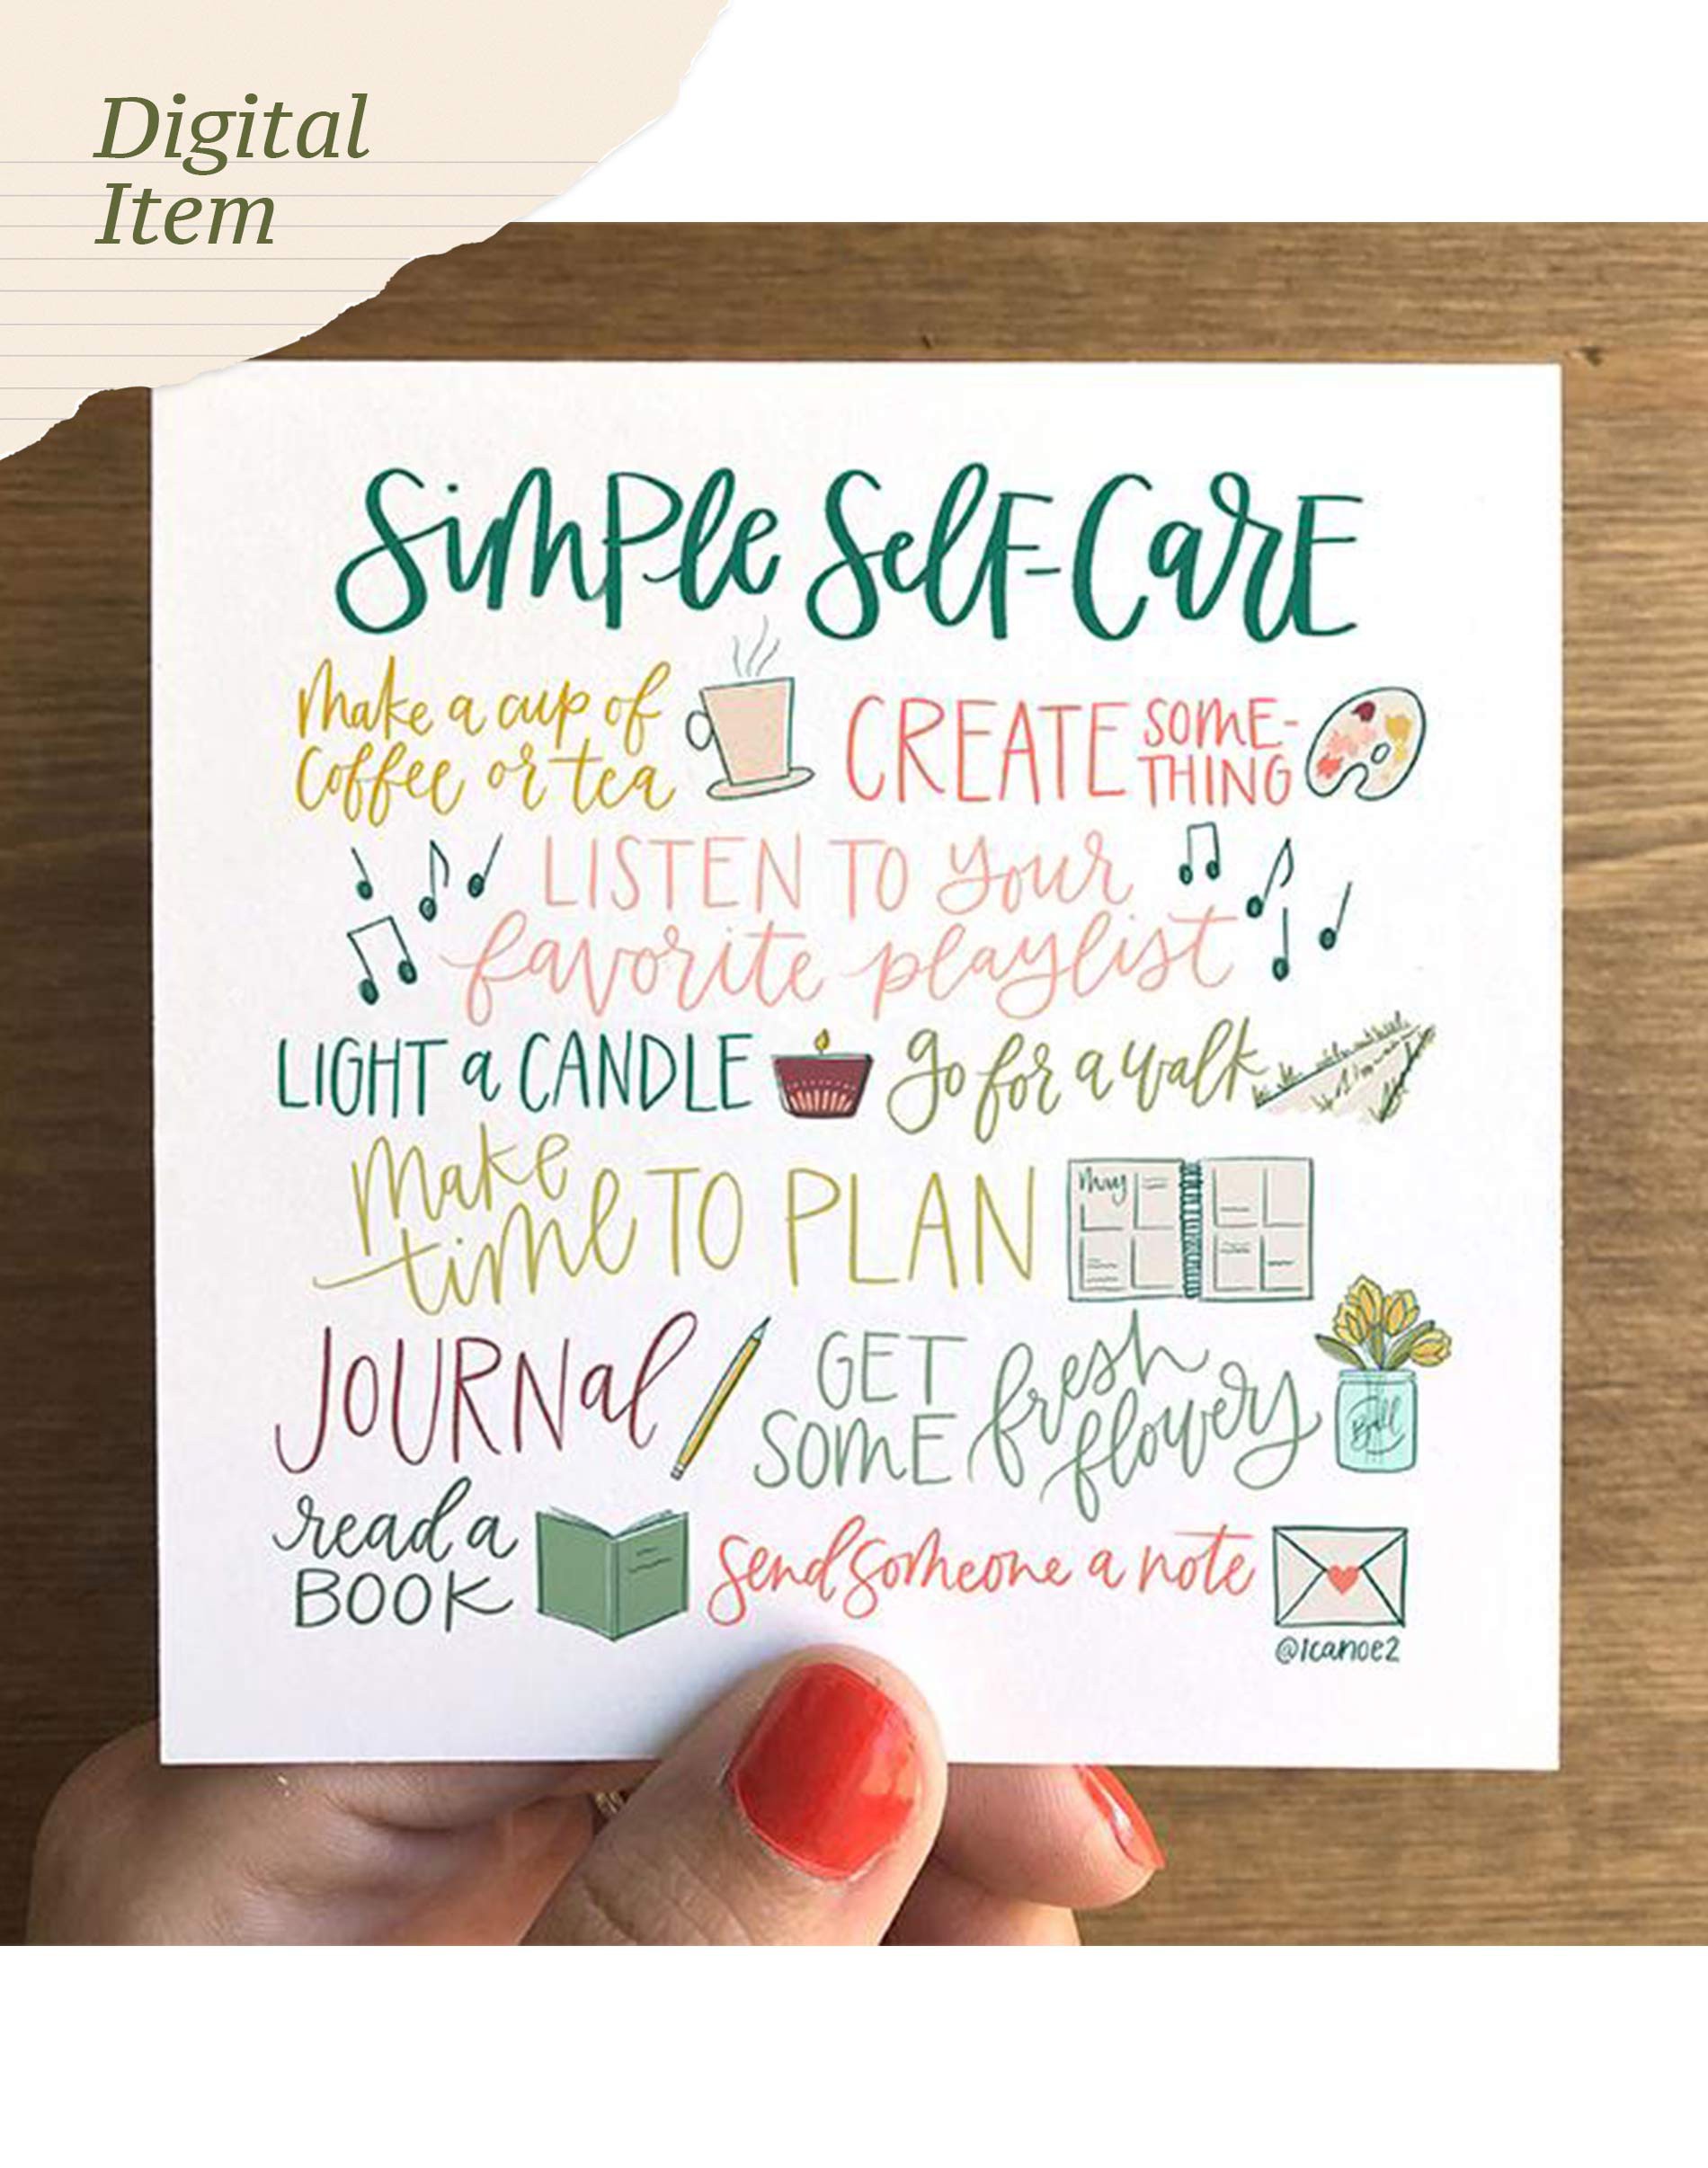 Digital Self-Care Sticker Book